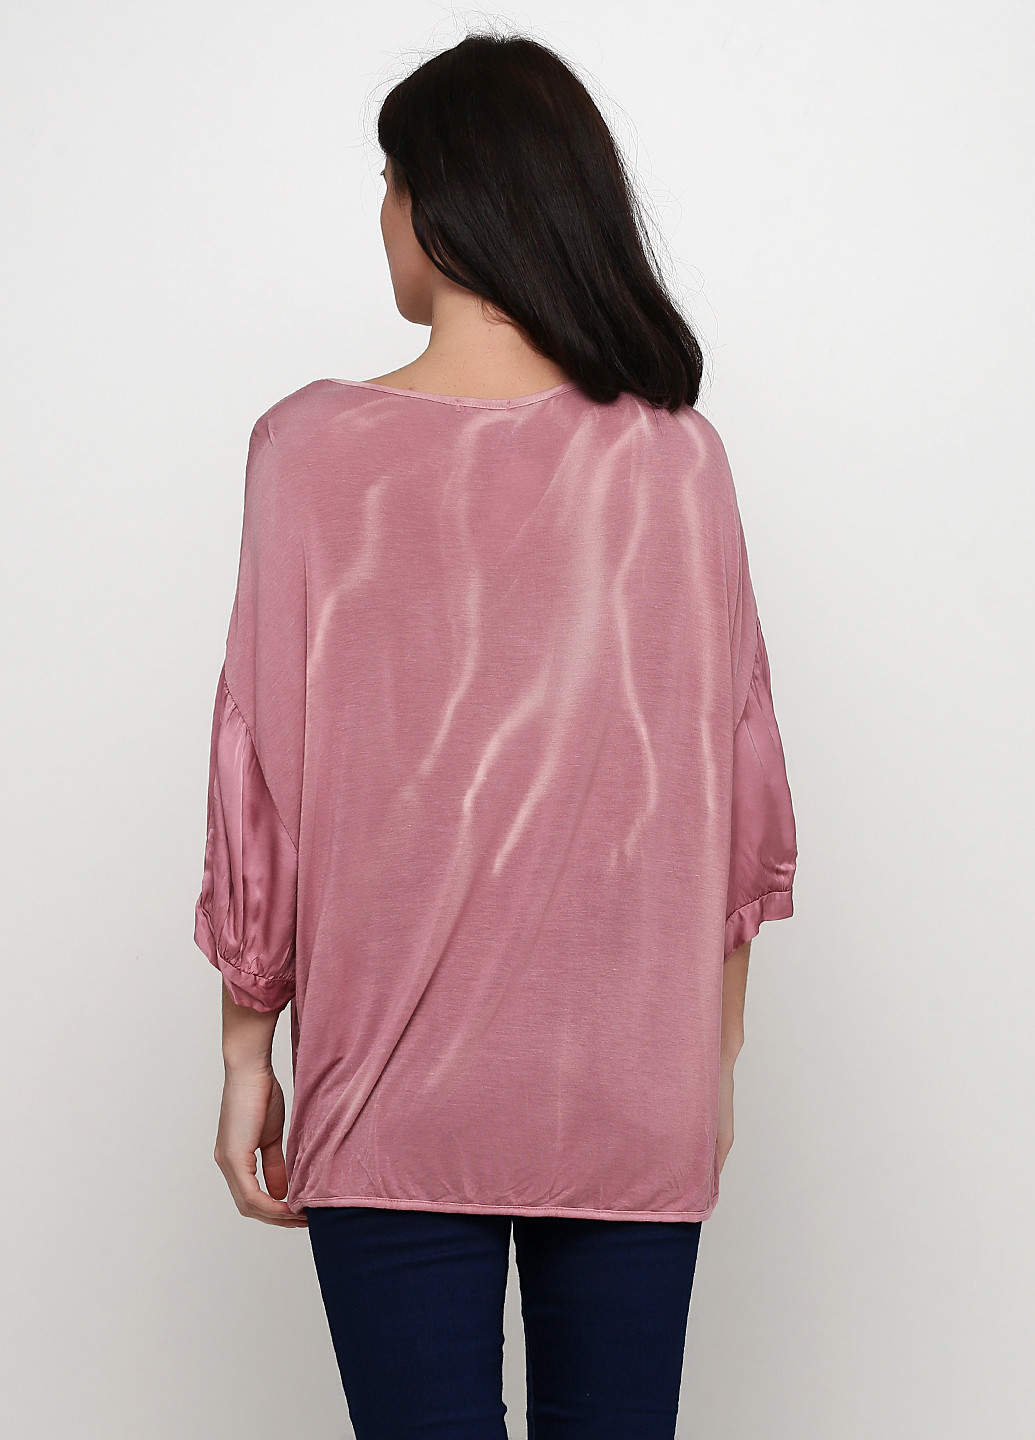 Светло-фиолетовая летняя блуза Made in Italy